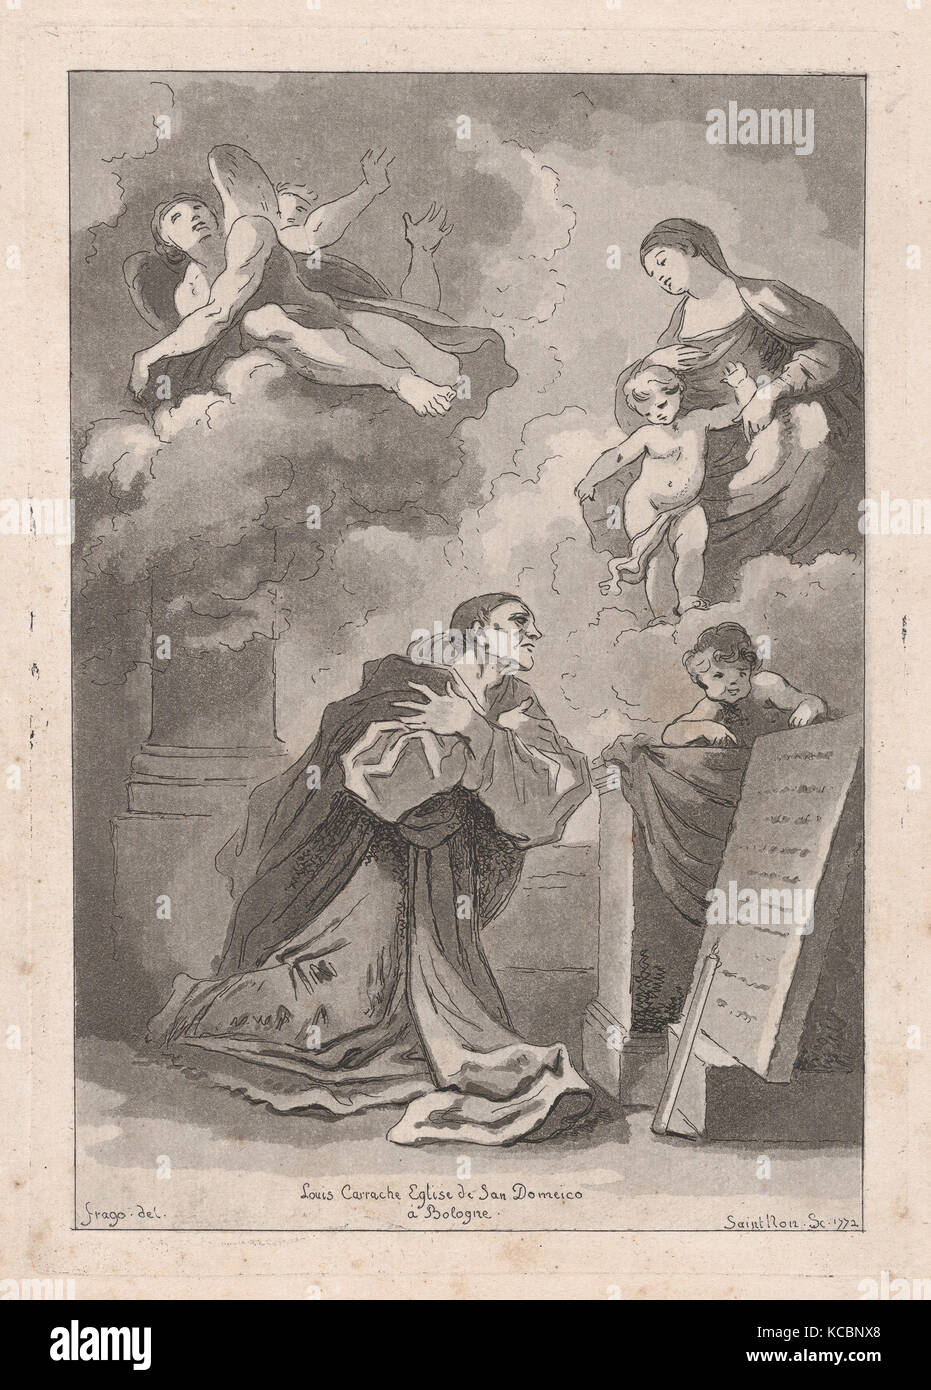 Recueil de Griffonis, de Vues, Paysages, fragments antiques et sujets historiques...s..i..n..d.., 1780 Stock Photo